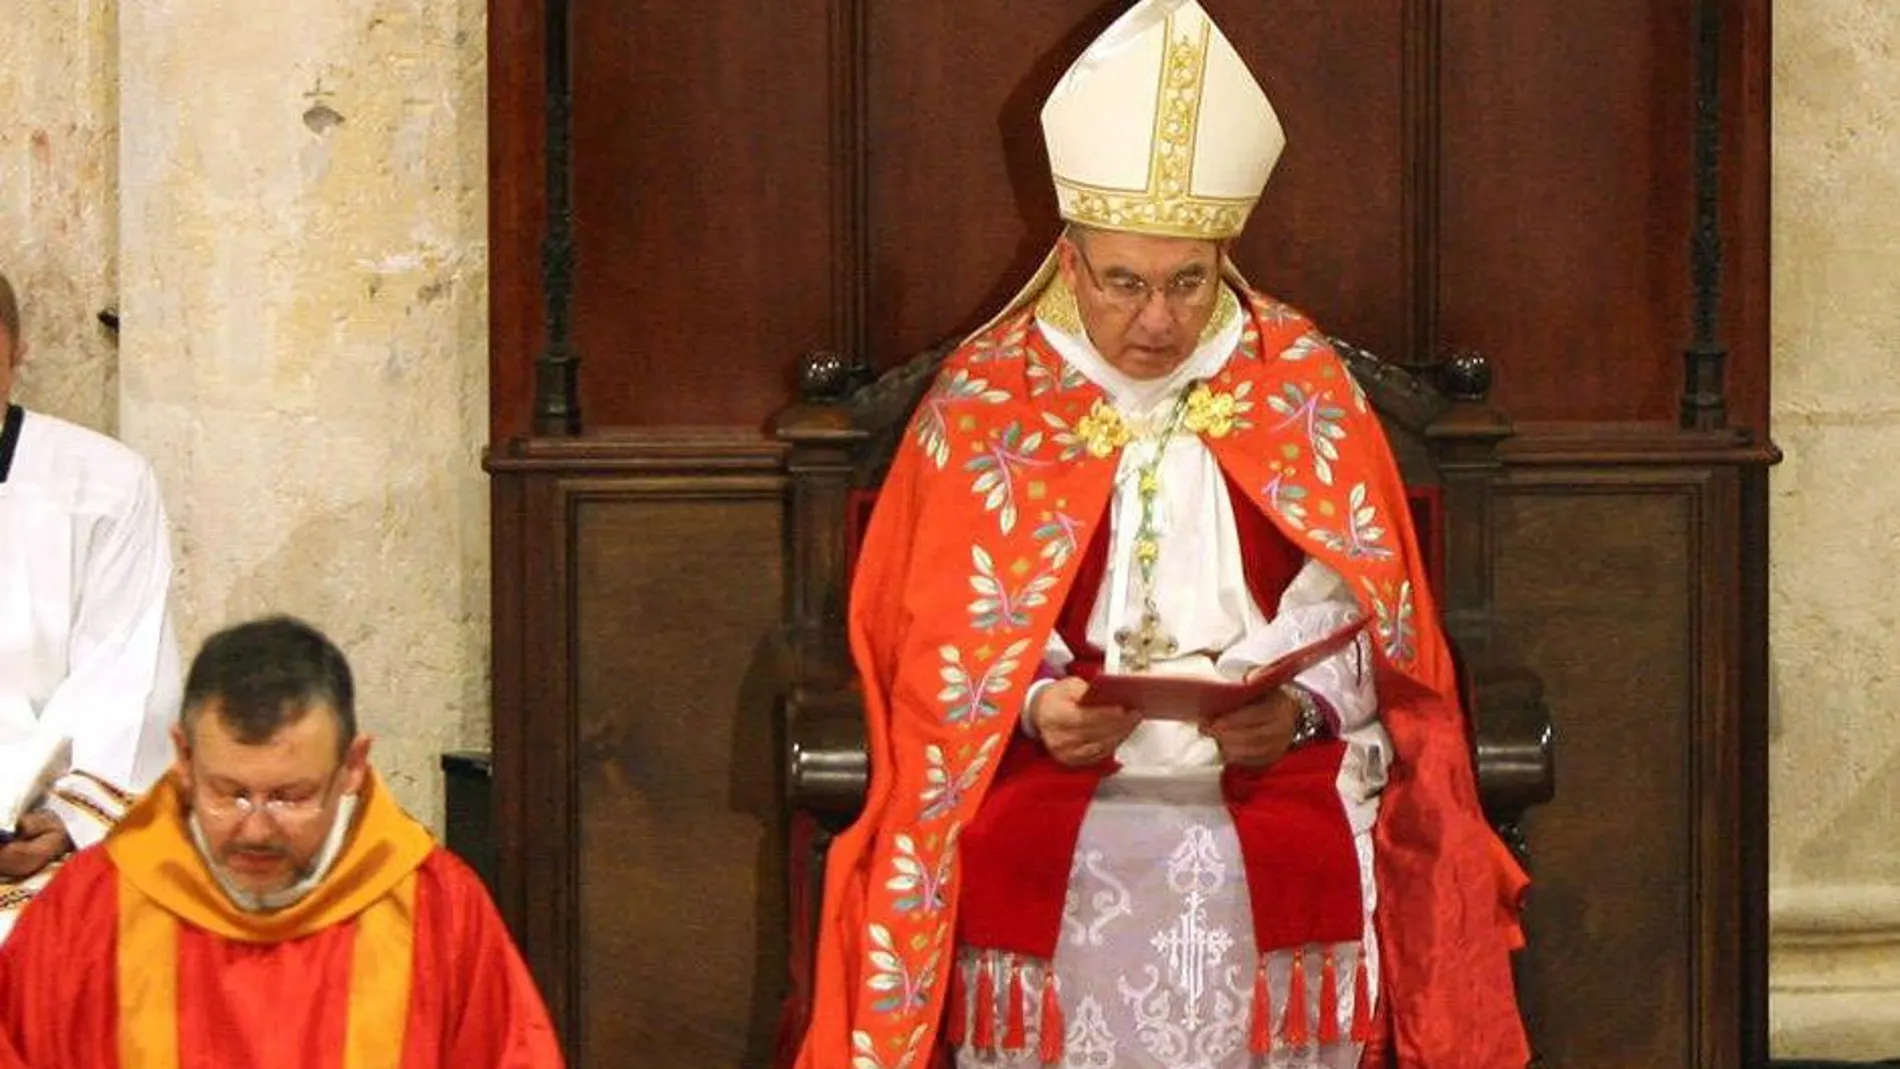 Misa de Vísperas, oficiada por Monseñor Don Jaume Pujol Balcells, arzobispo metropolitano y primado de Tarragona